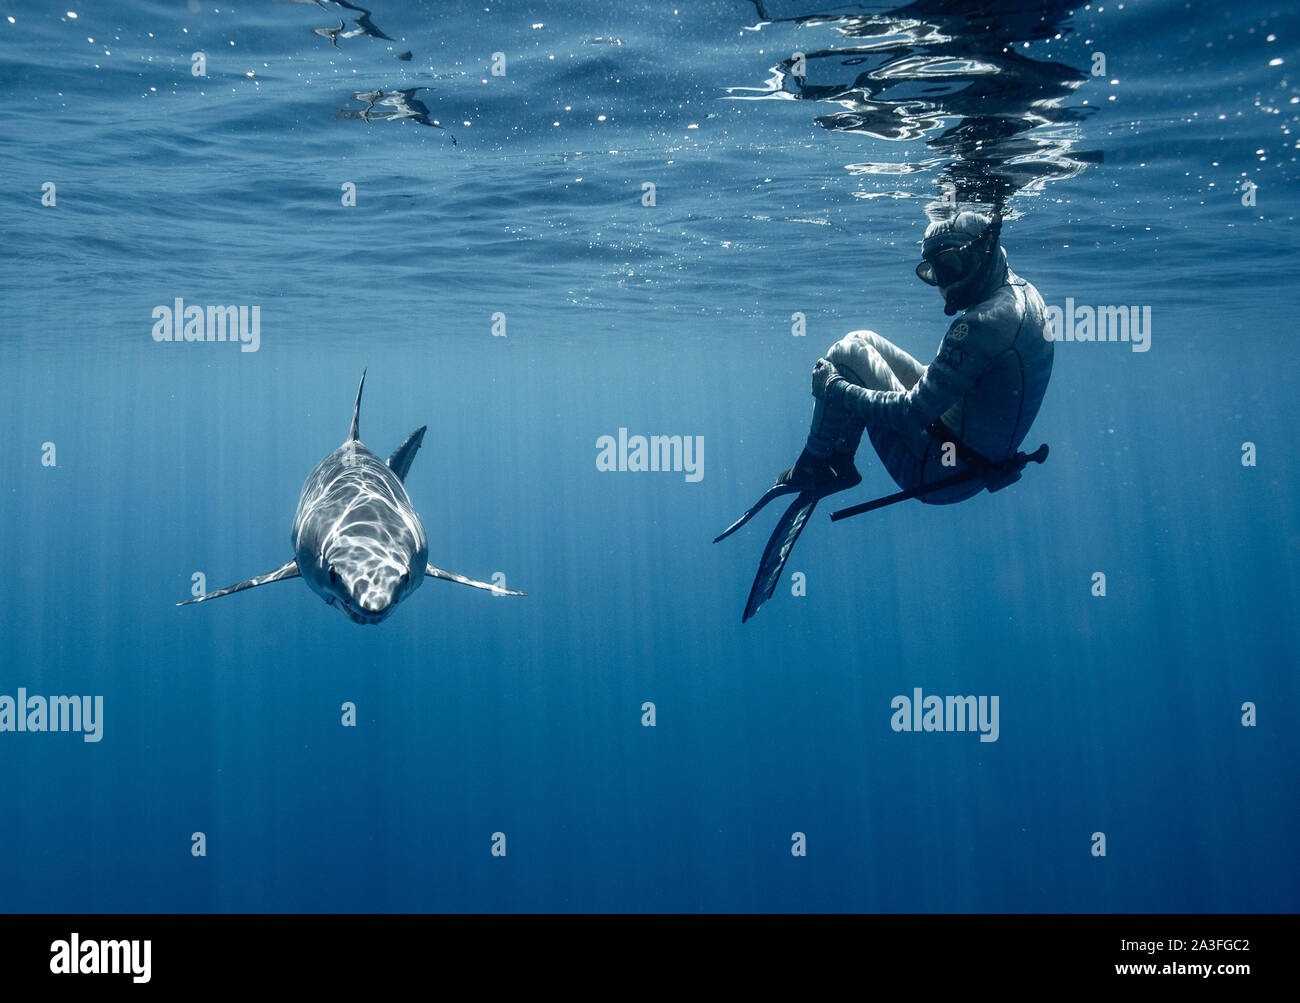 Neuseeland: Beide Riley Elliott und ein Hai den Blick in die Kamera. Atemberaubende Aufnahmen fängt den Moment ein 12-Fuß-Shark Bites ein Boot in einem Stockfoto